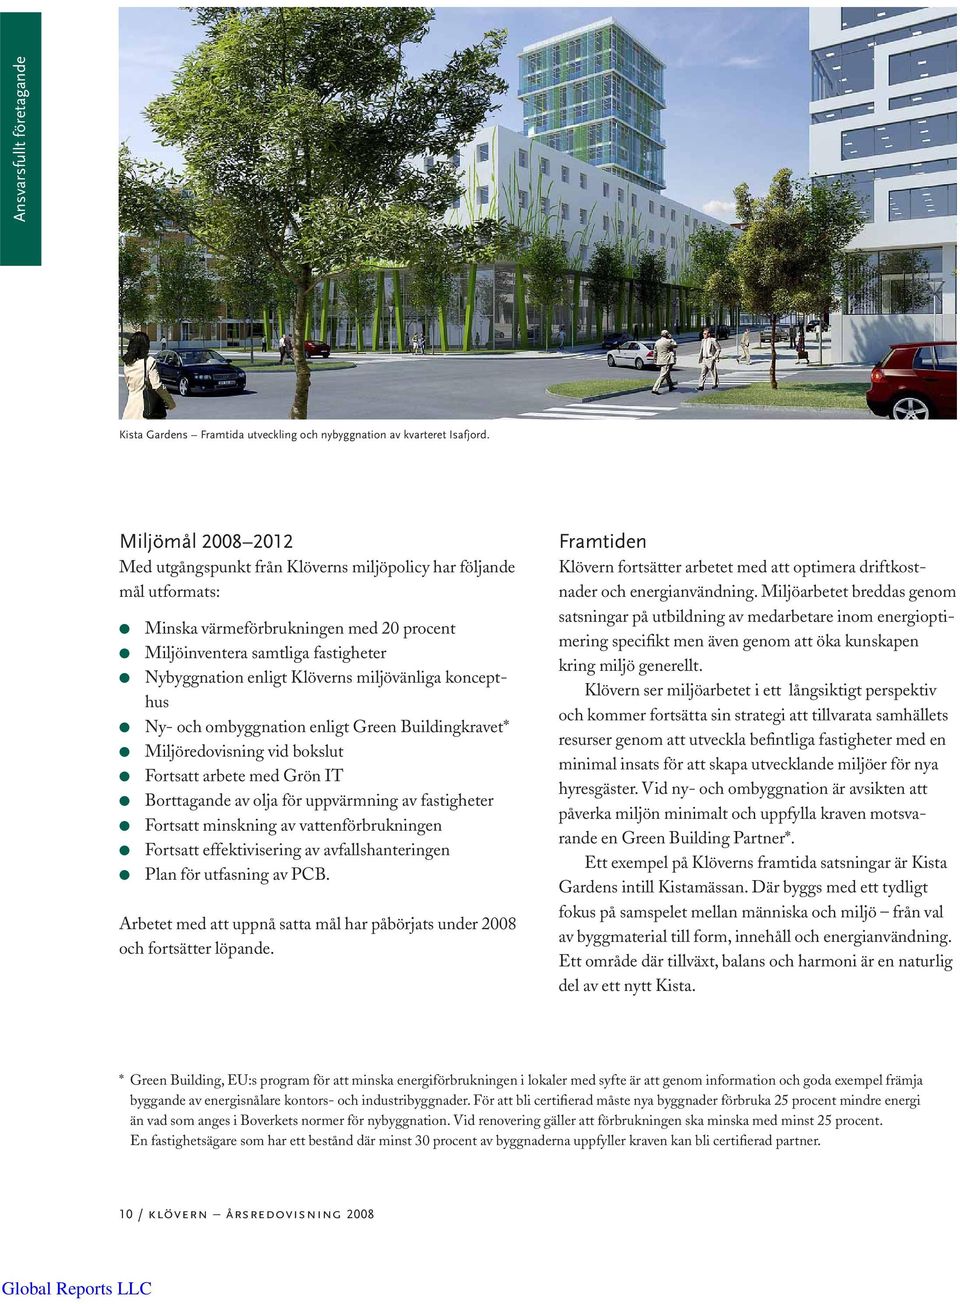 miljövänliga koncepthus Ny- och ombyggnation enligt Green Buildingkravet* Miljöredovisning vid bokslut Fortsatt arbete med Grön IT Borttagande av olja för uppvärmning av fastigheter Fortsatt